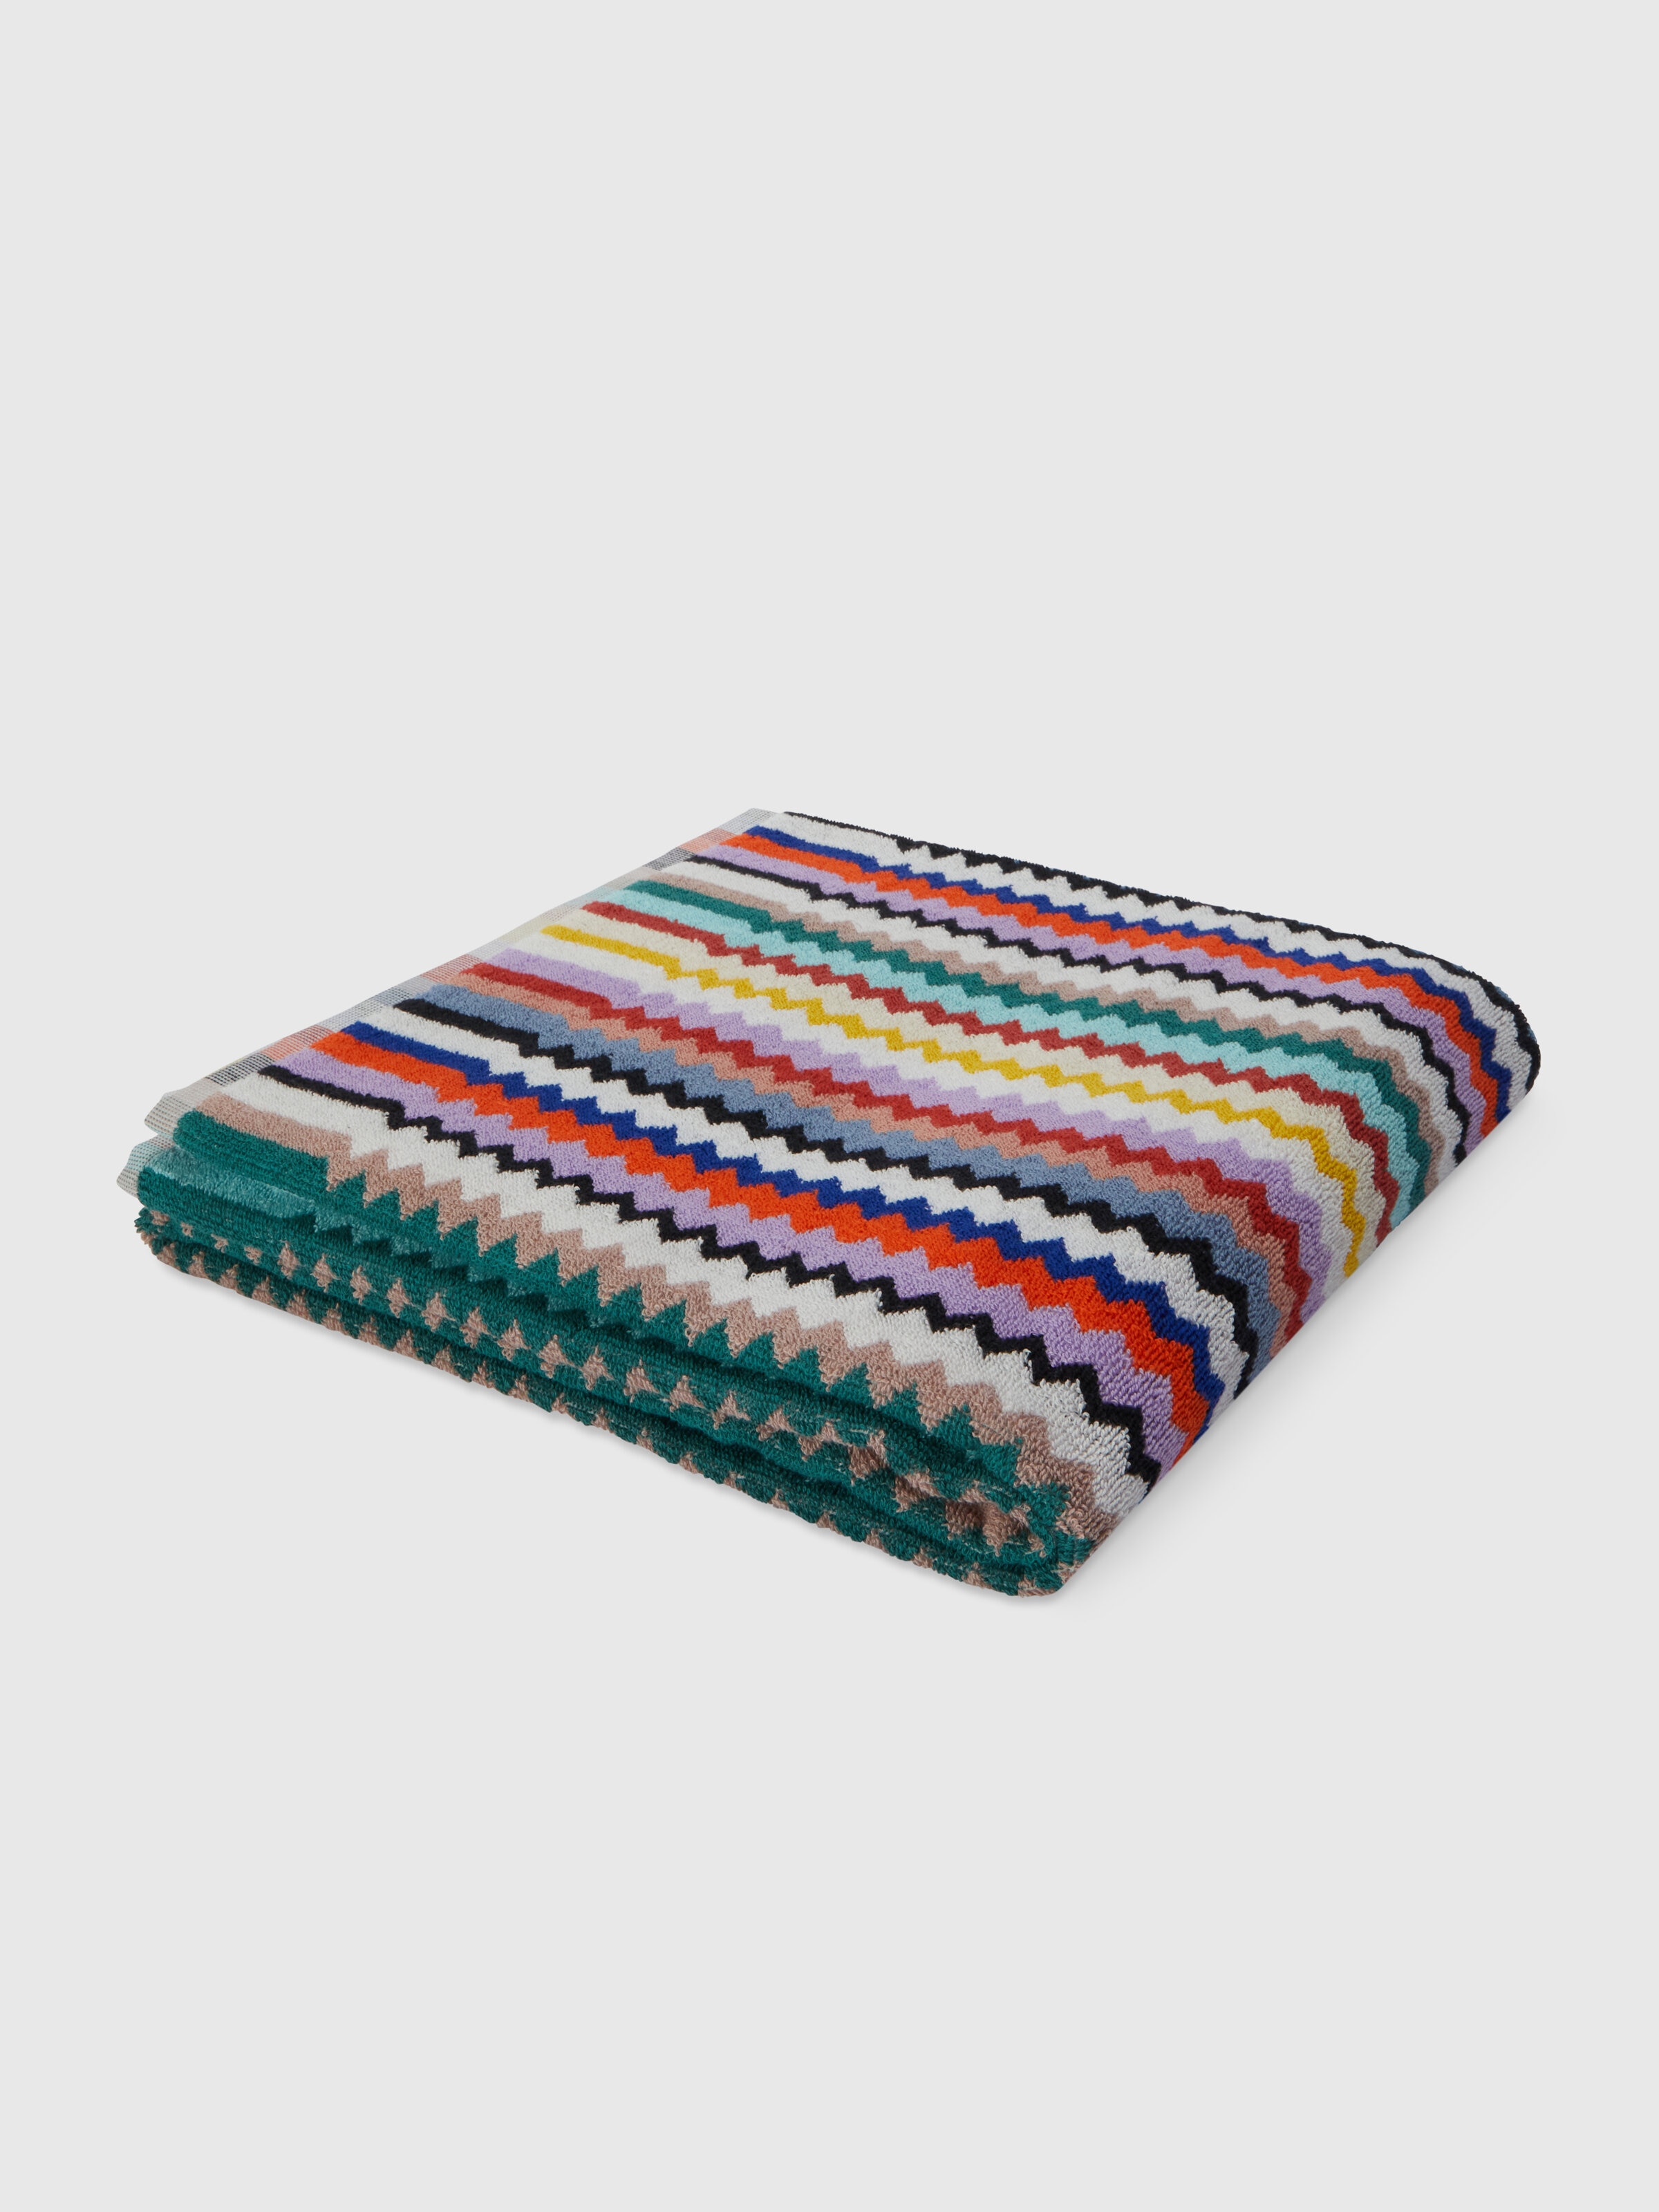 Riverbero 150x100 cm bath towel in zigzag cotton terry cloth , Multicoloured  - 0